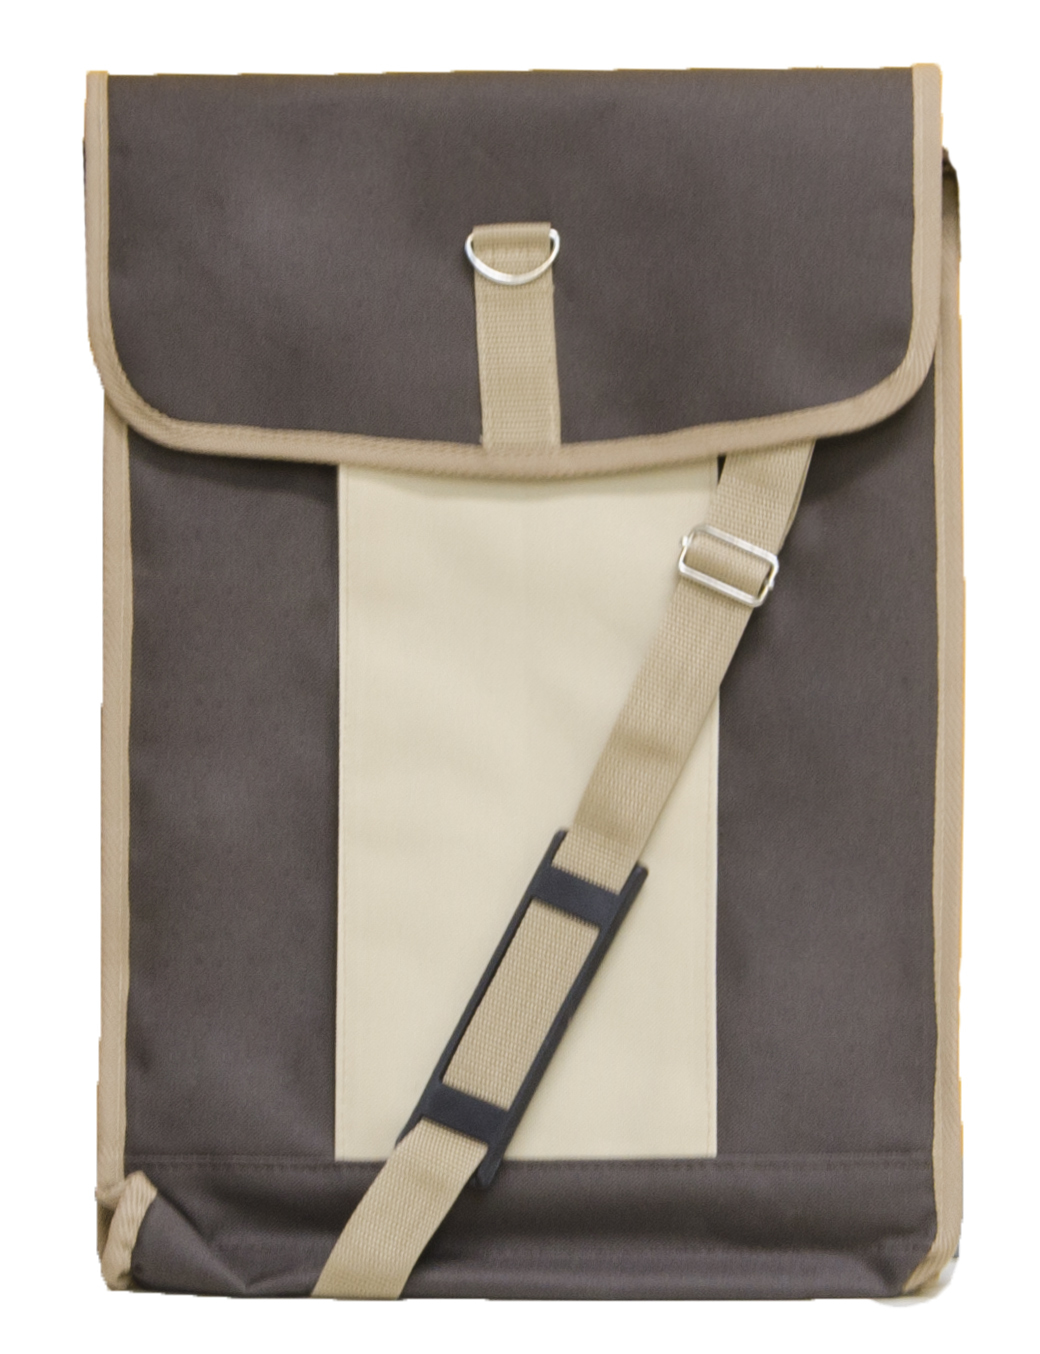 Сумка для планшета 42х30 (жест.) коричневая с бежевым карманом сумка кросс боди отдел на молнии наружный карман коричневый